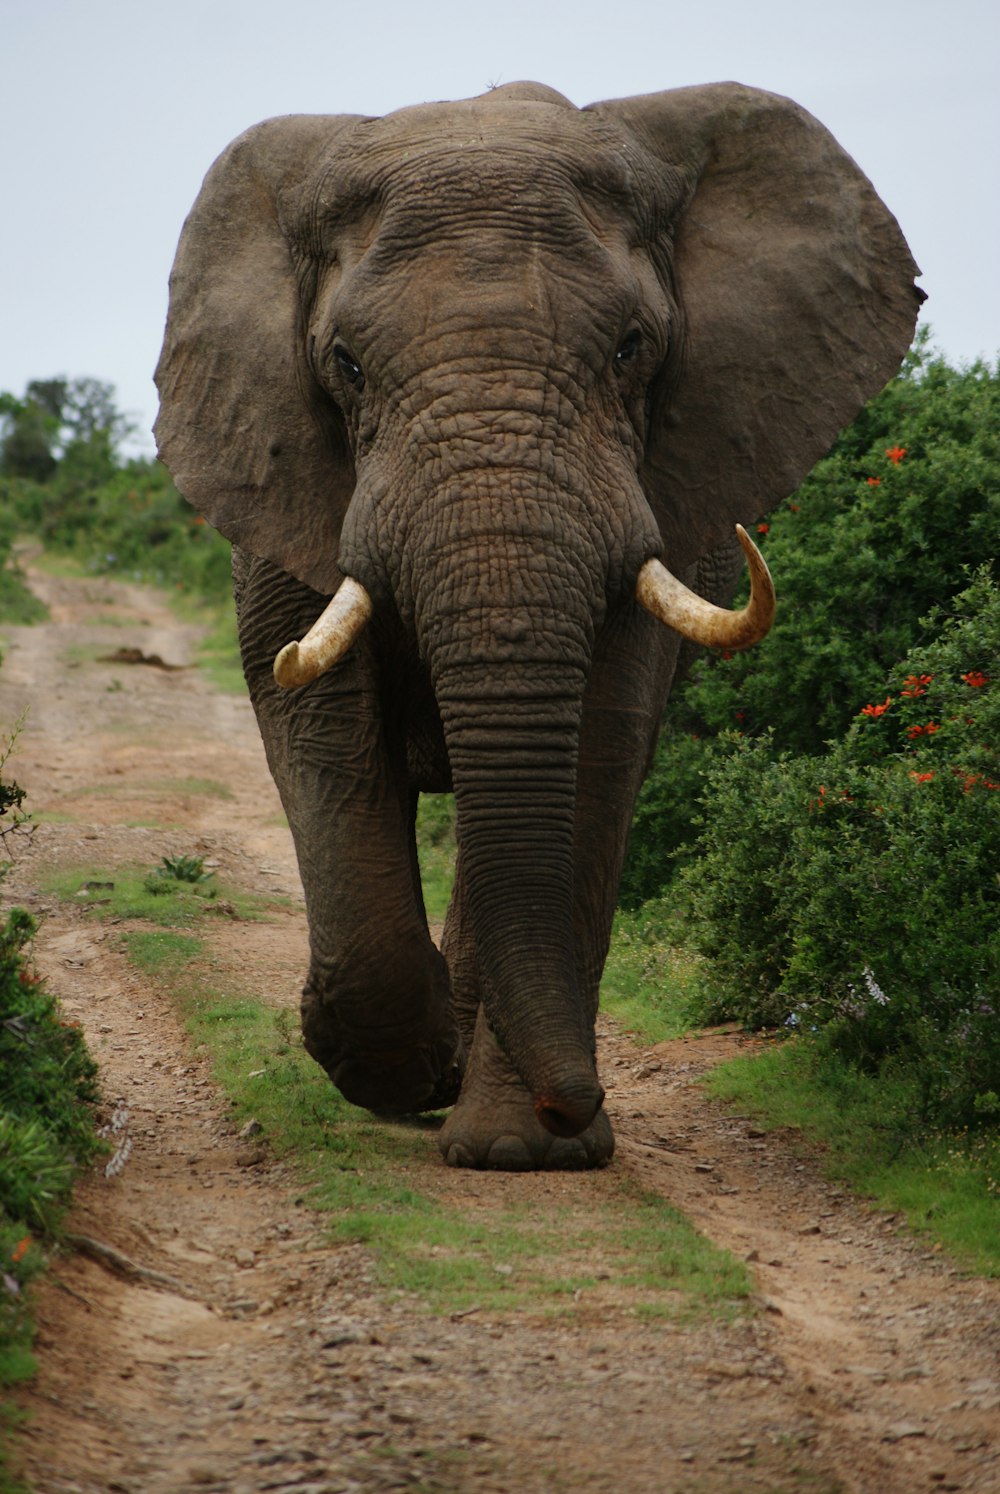 Grauer Elefant, der tagsüber neben grünen Pflanzen spazieren geht